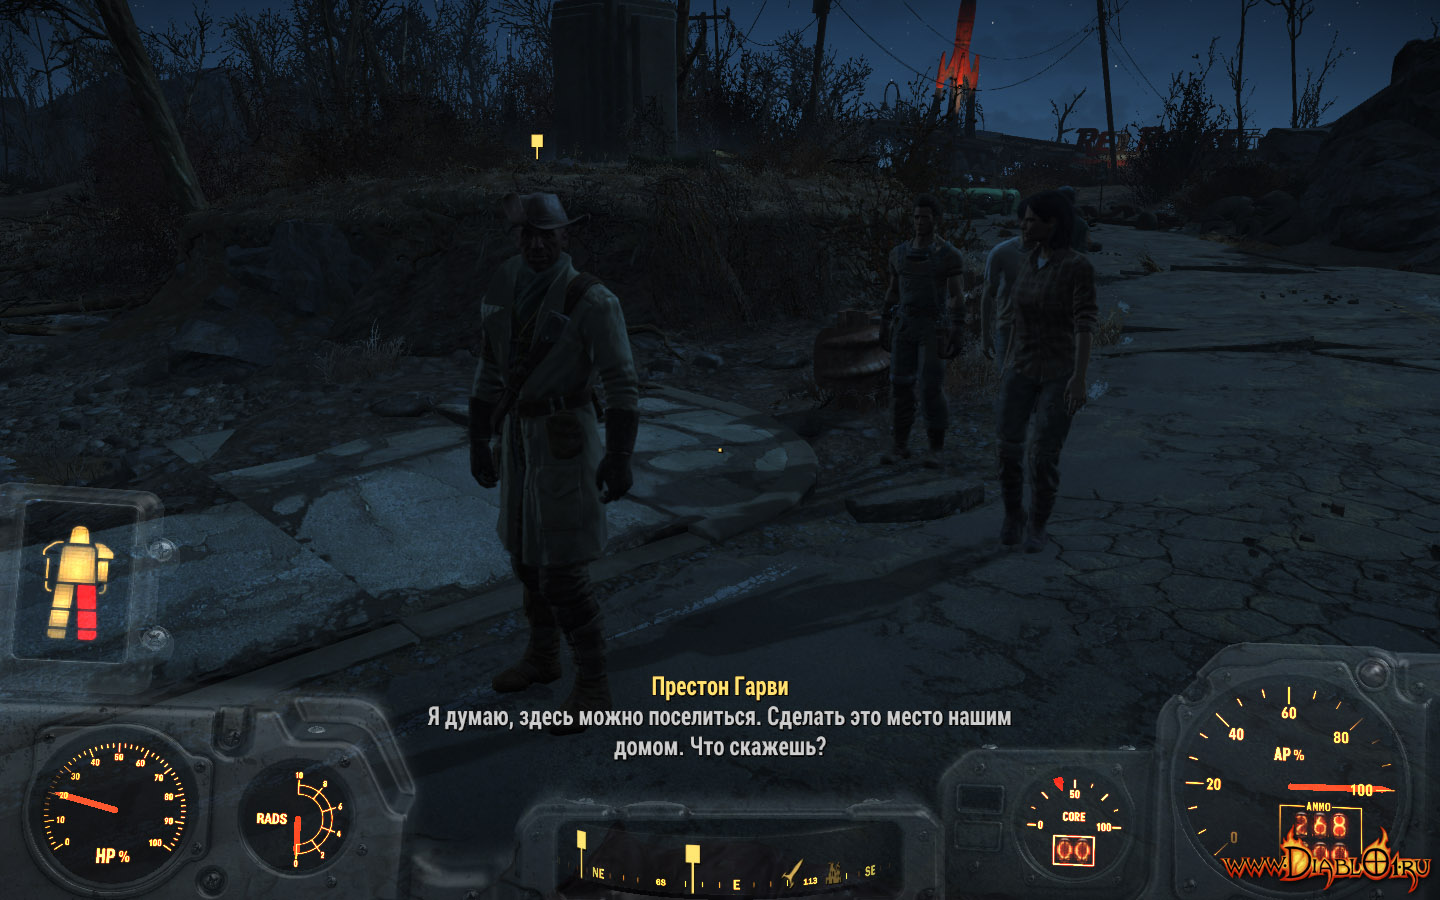 Fallout 4 миссии престона гарви фото 100